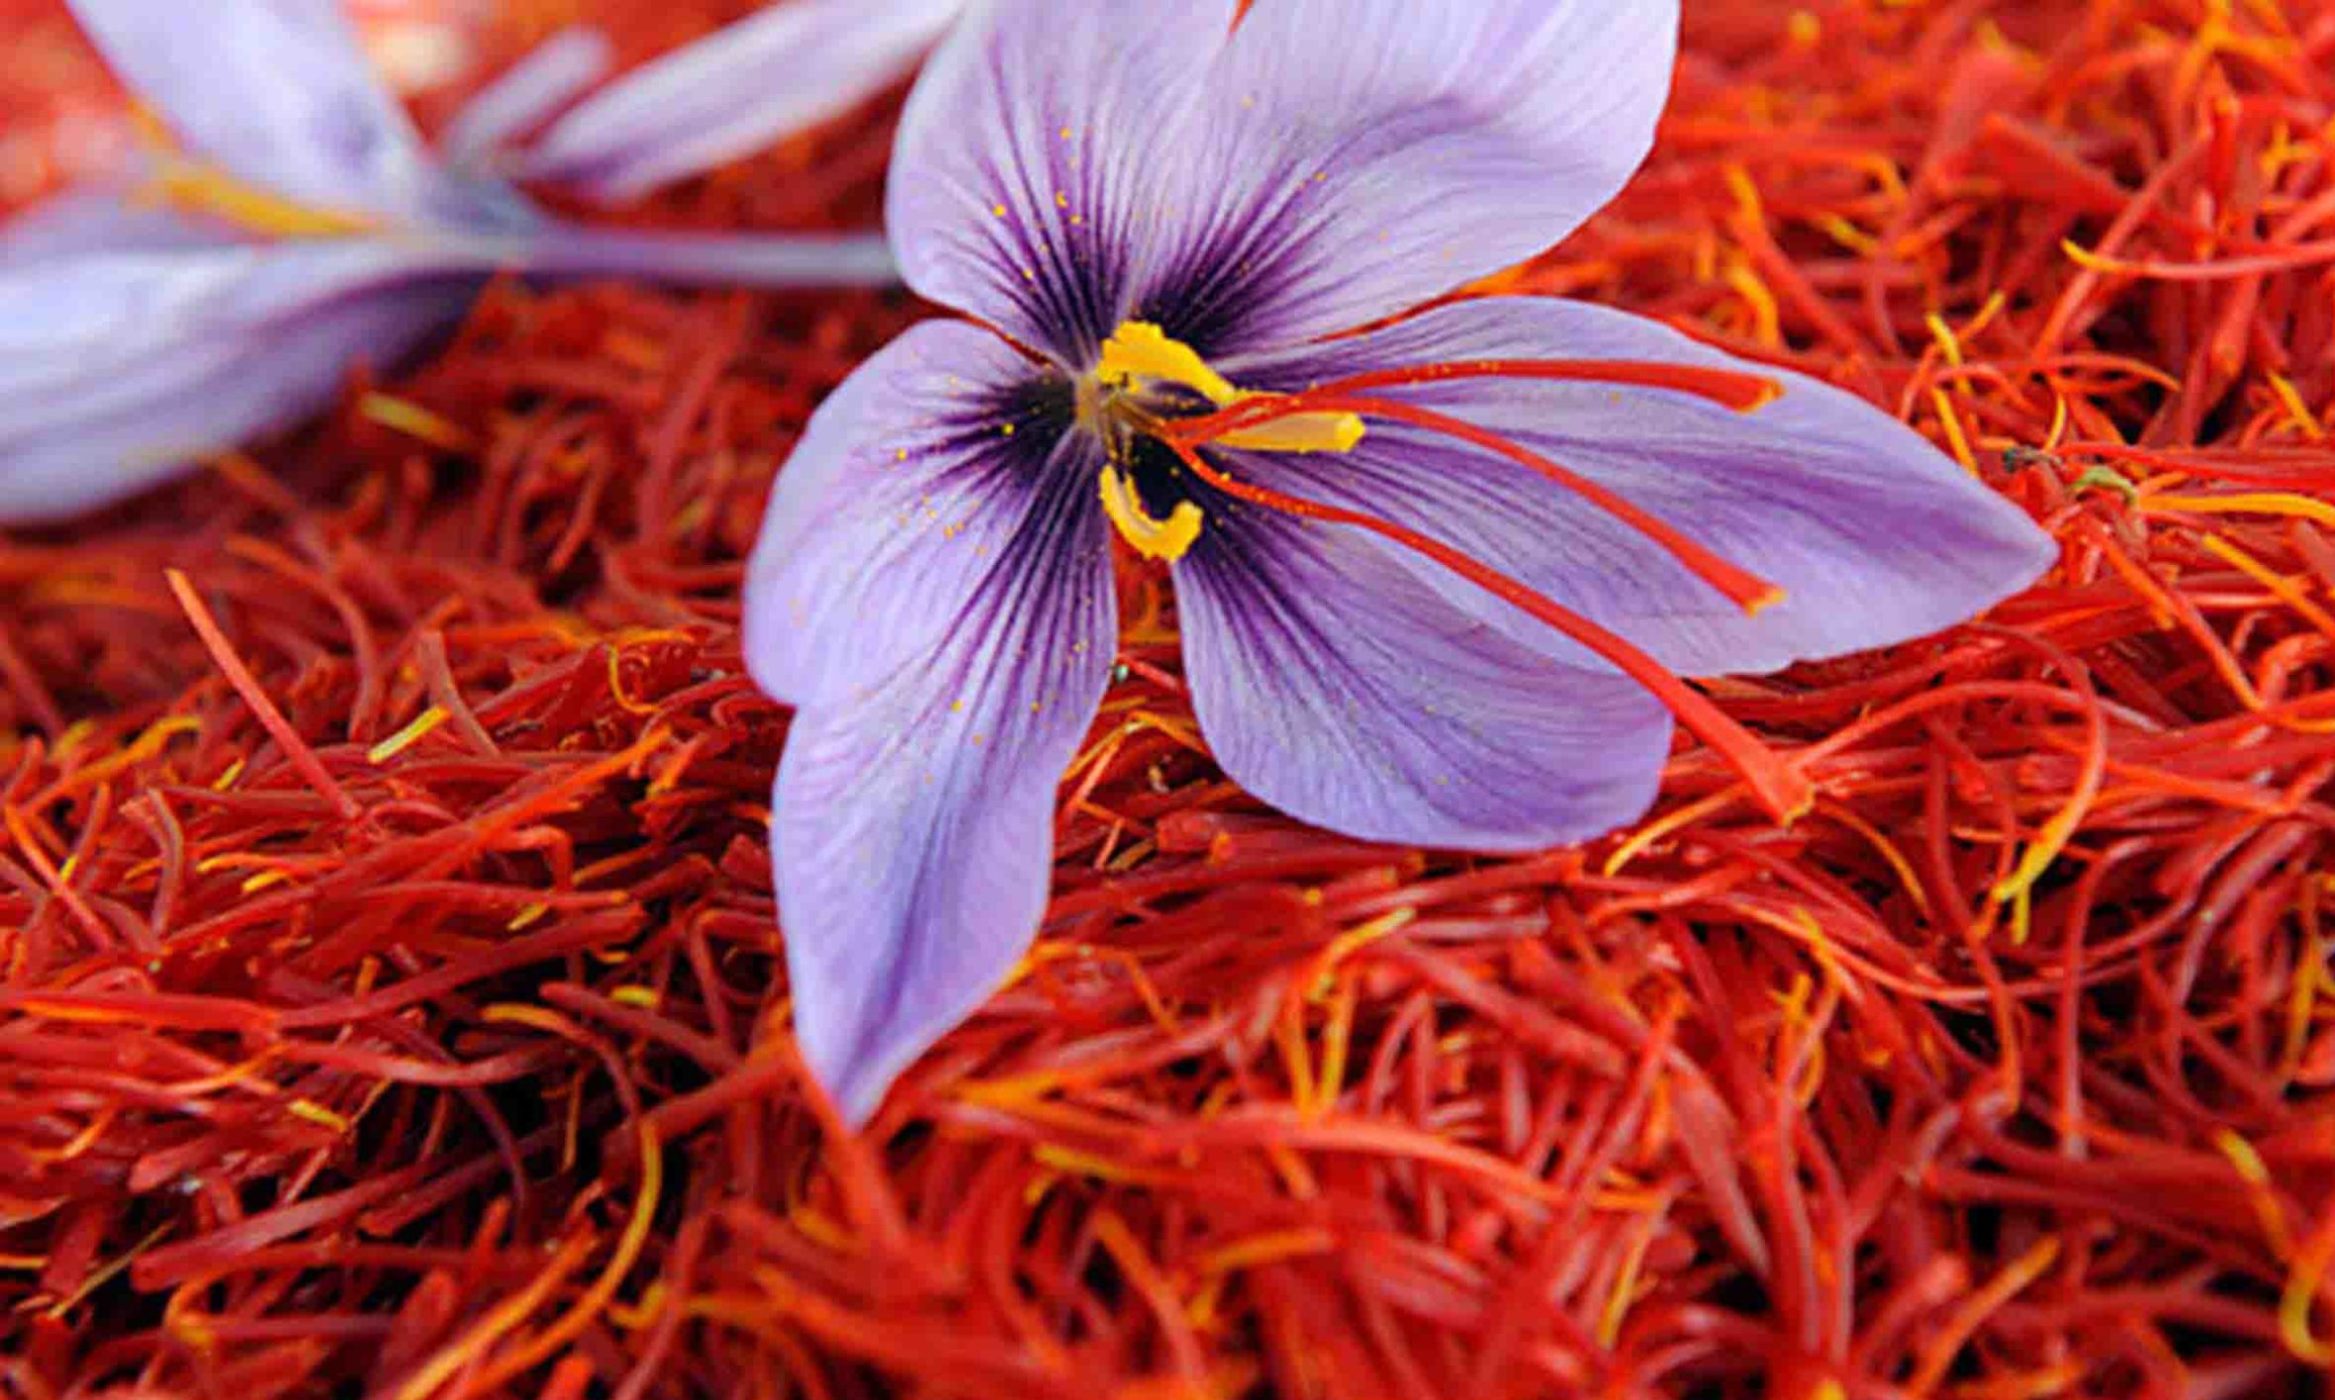 Saffron